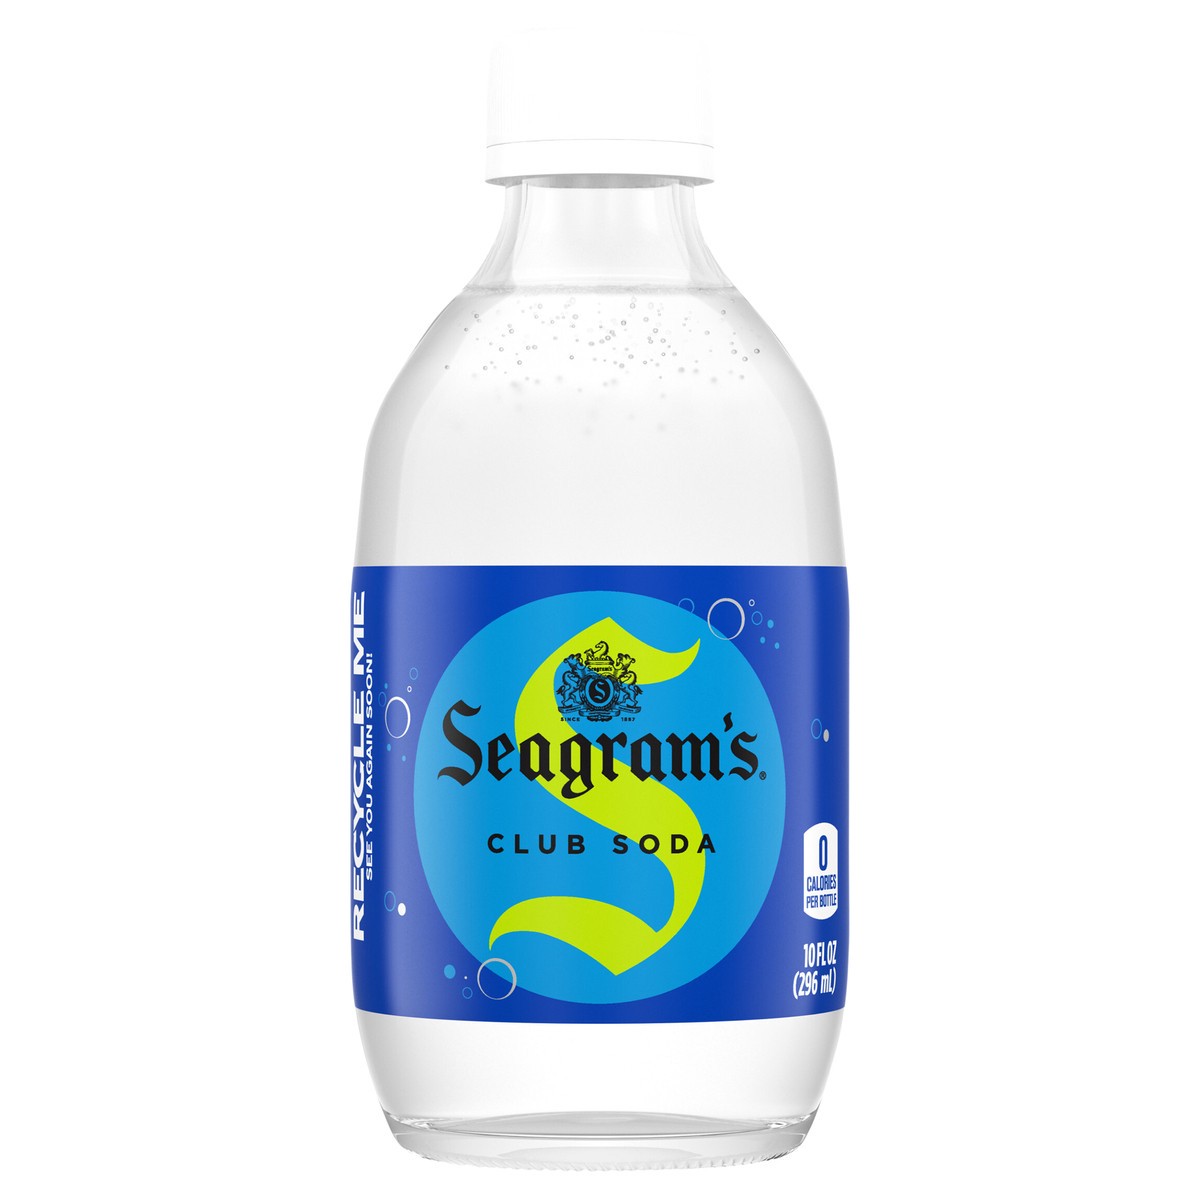 slide 9 of 9, Seagram's Seagrams Club Soda Glass Bottle- 10 fl oz, 60 oz